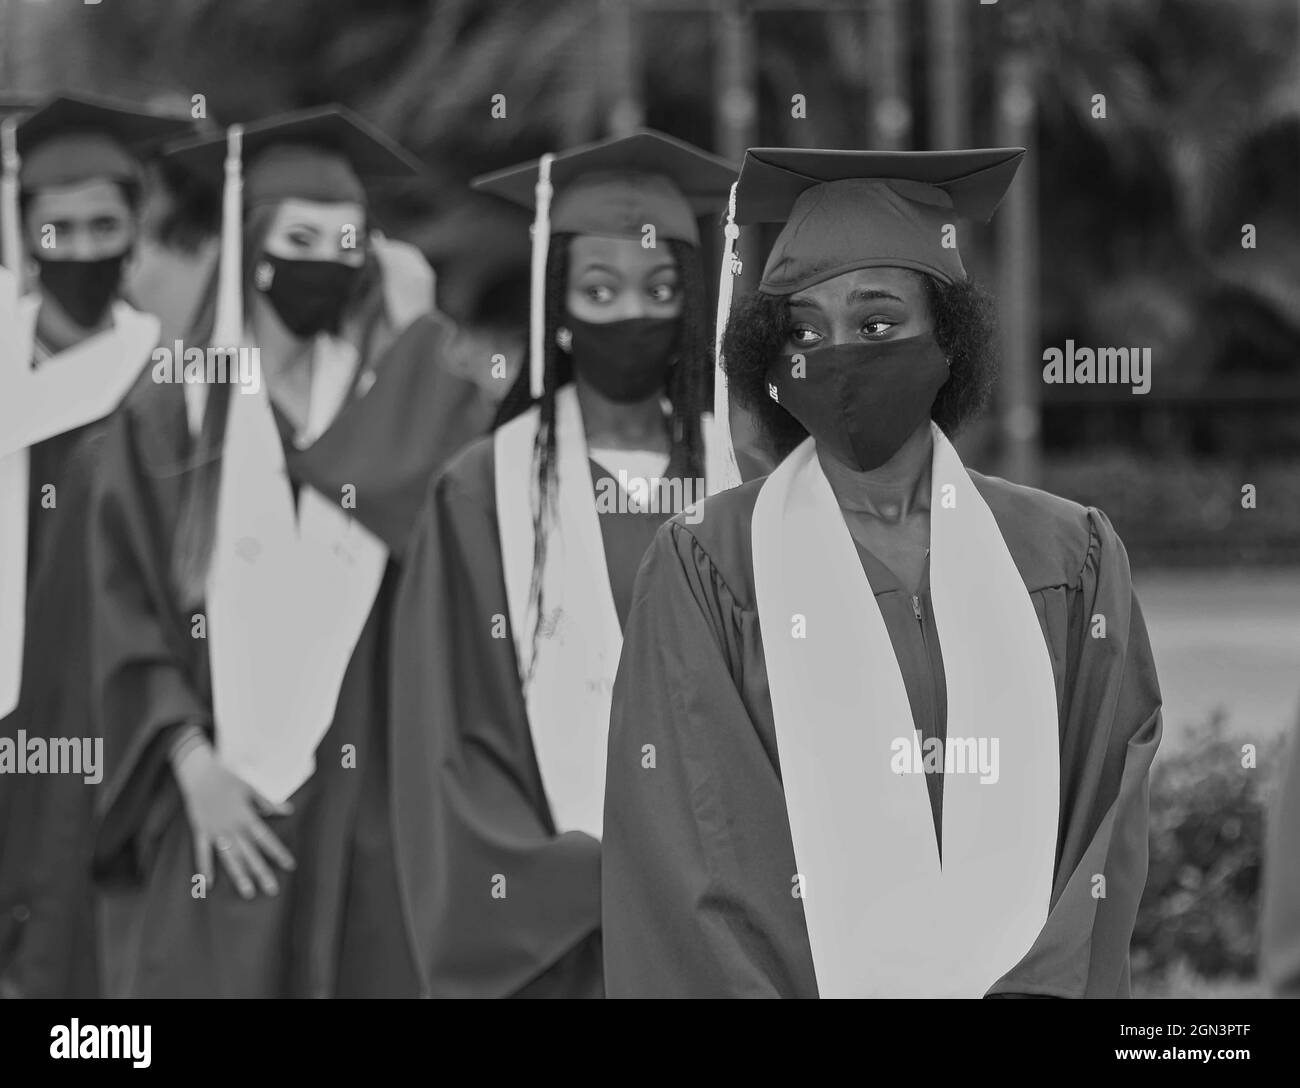 Graduation dans les masques en raison de COVID 19 - Corona virus.les diplômés avaient ro port des masques Banque D'Images